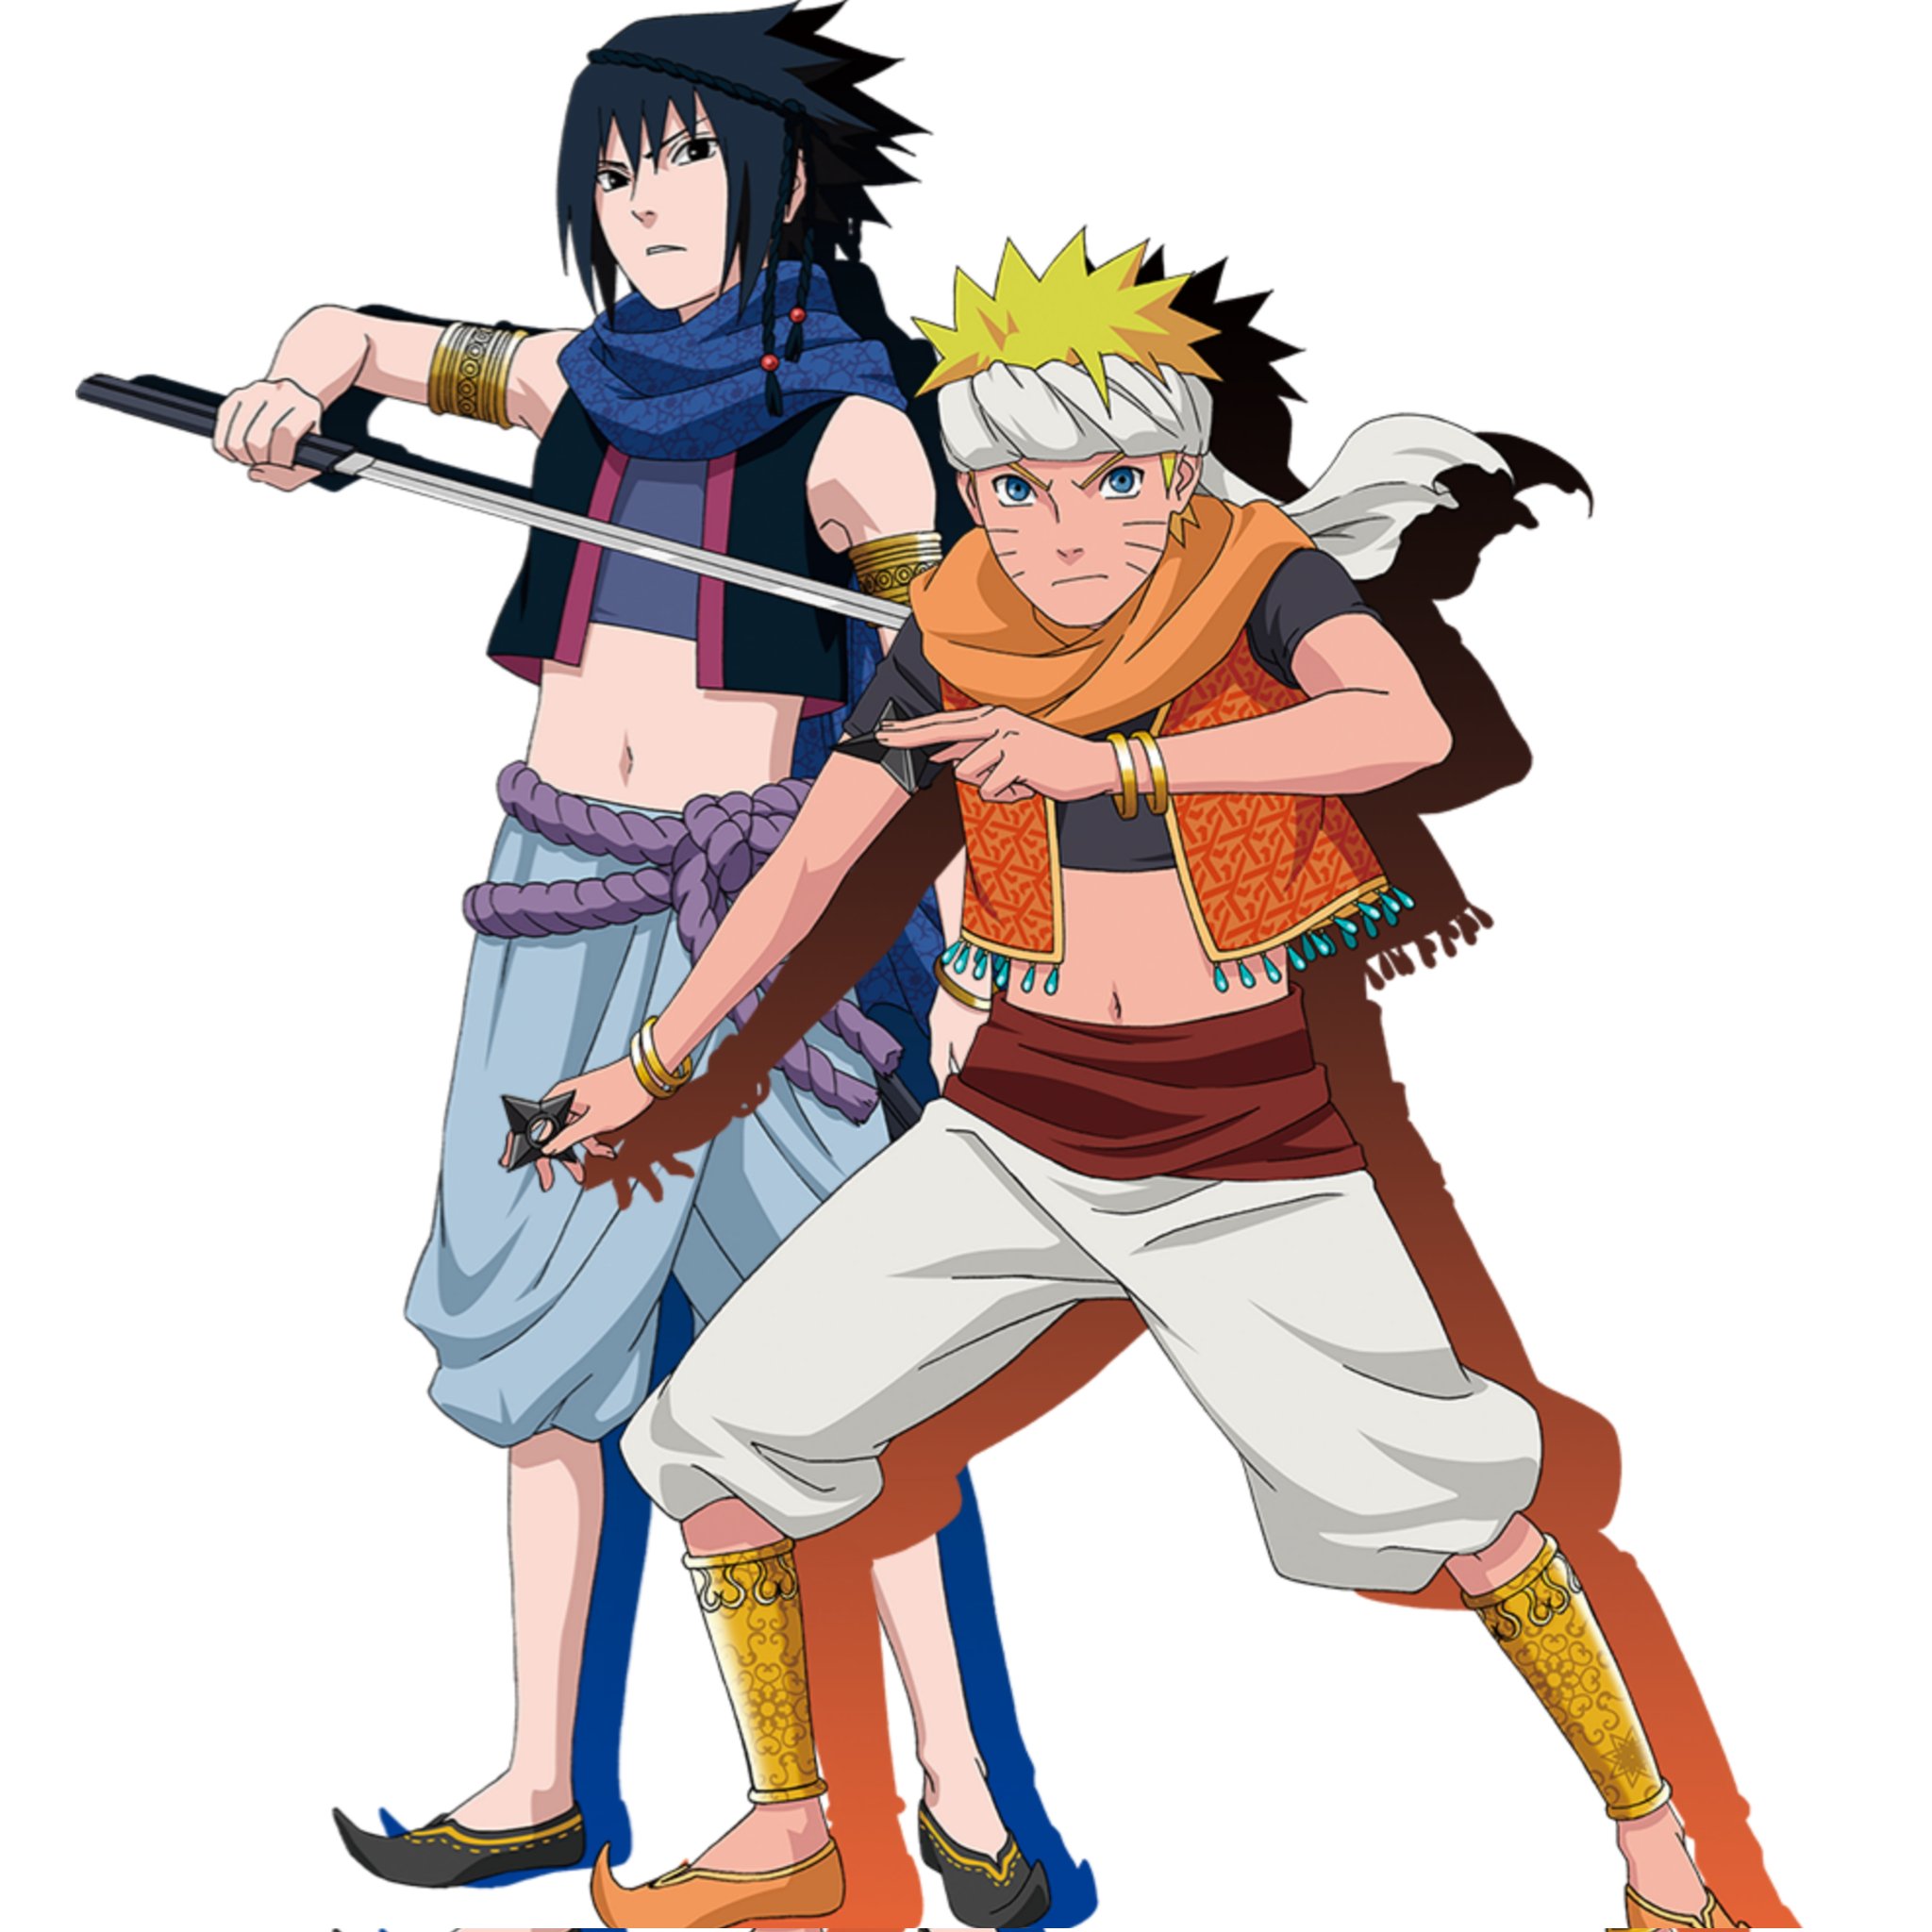 Naruto & Sasuke #naruto #sasuke